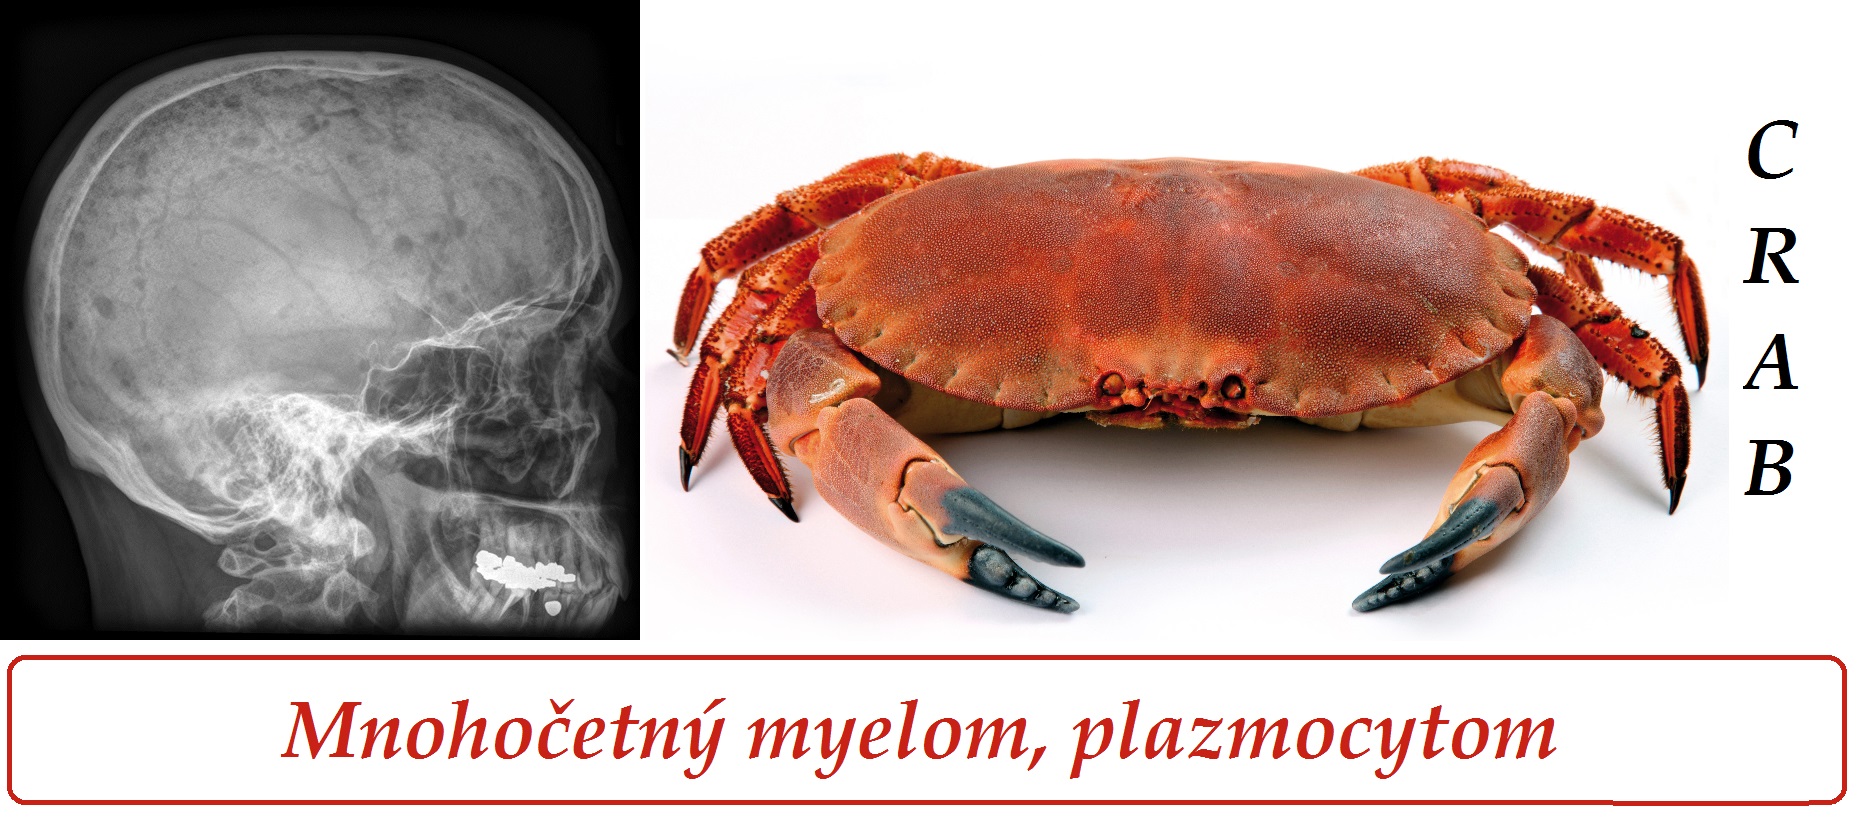 mnohocetny-myelom-plazmocytom-priznaky-projevy-symptomy